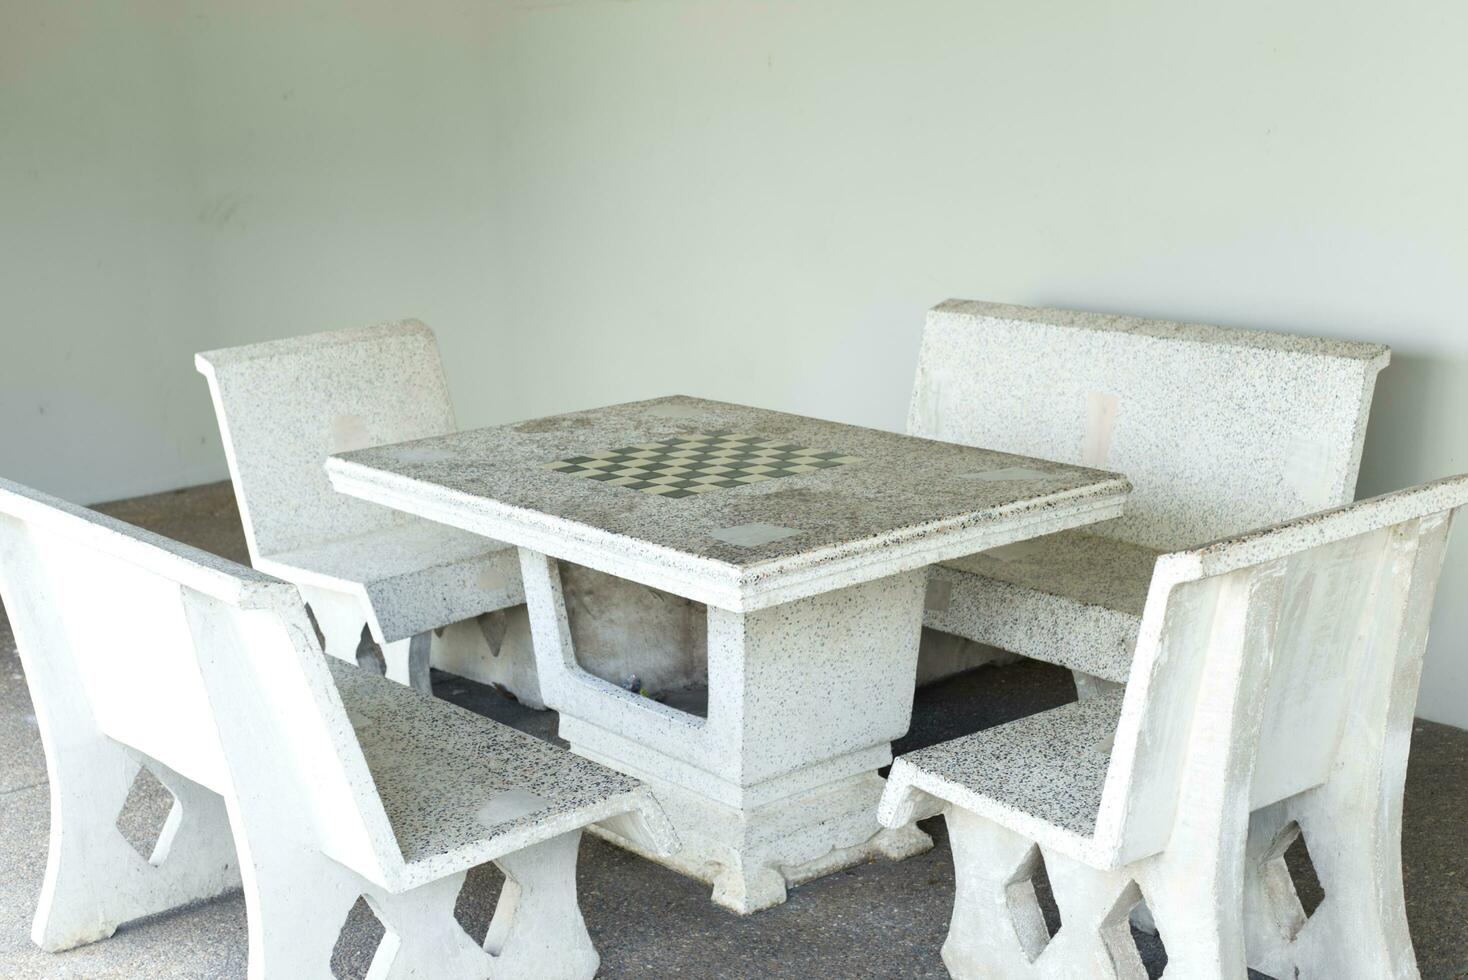 vit cement och marmor tabell med schack tabell och 4 stol uppsättning i de trädgård foto